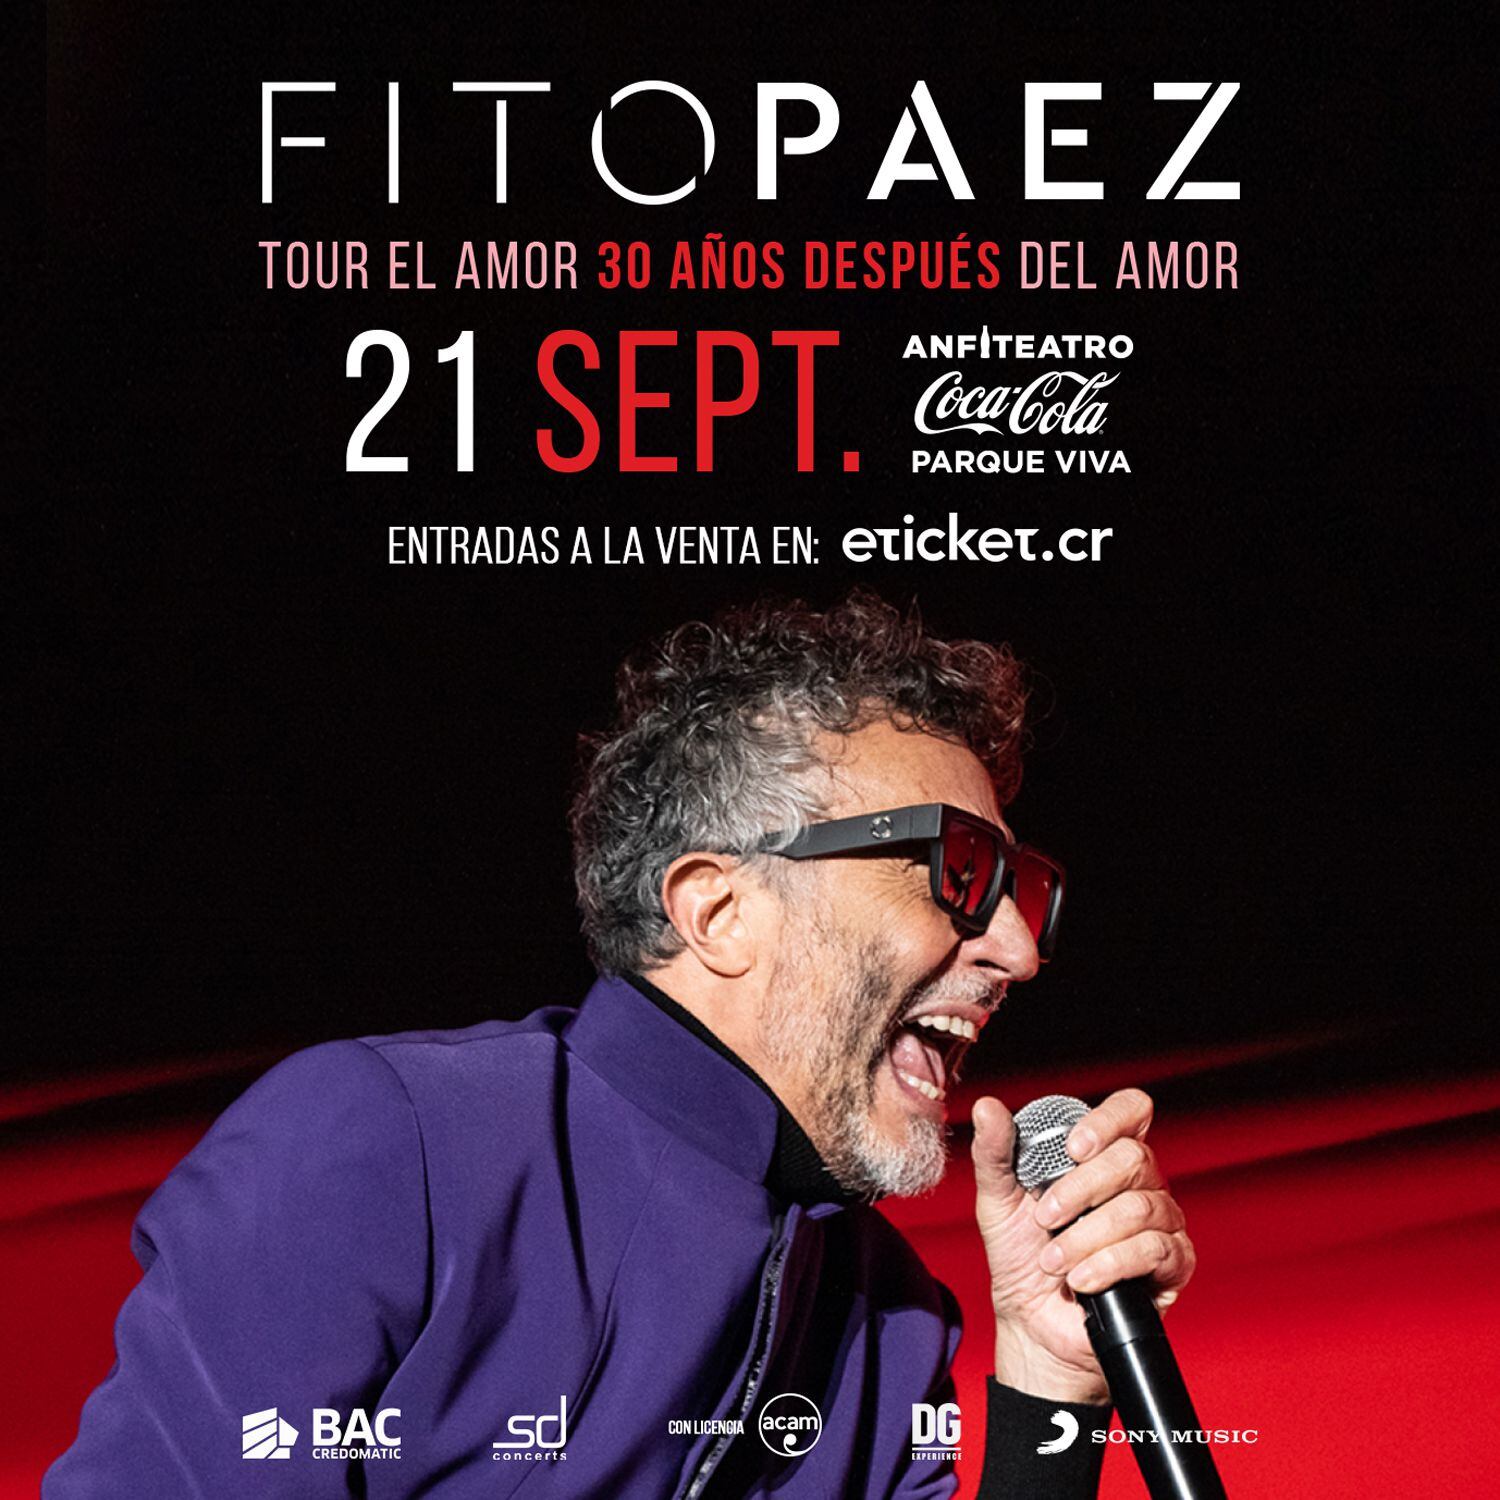 La gira del argentino Fito Páez pasará por distintos países de América Latina.